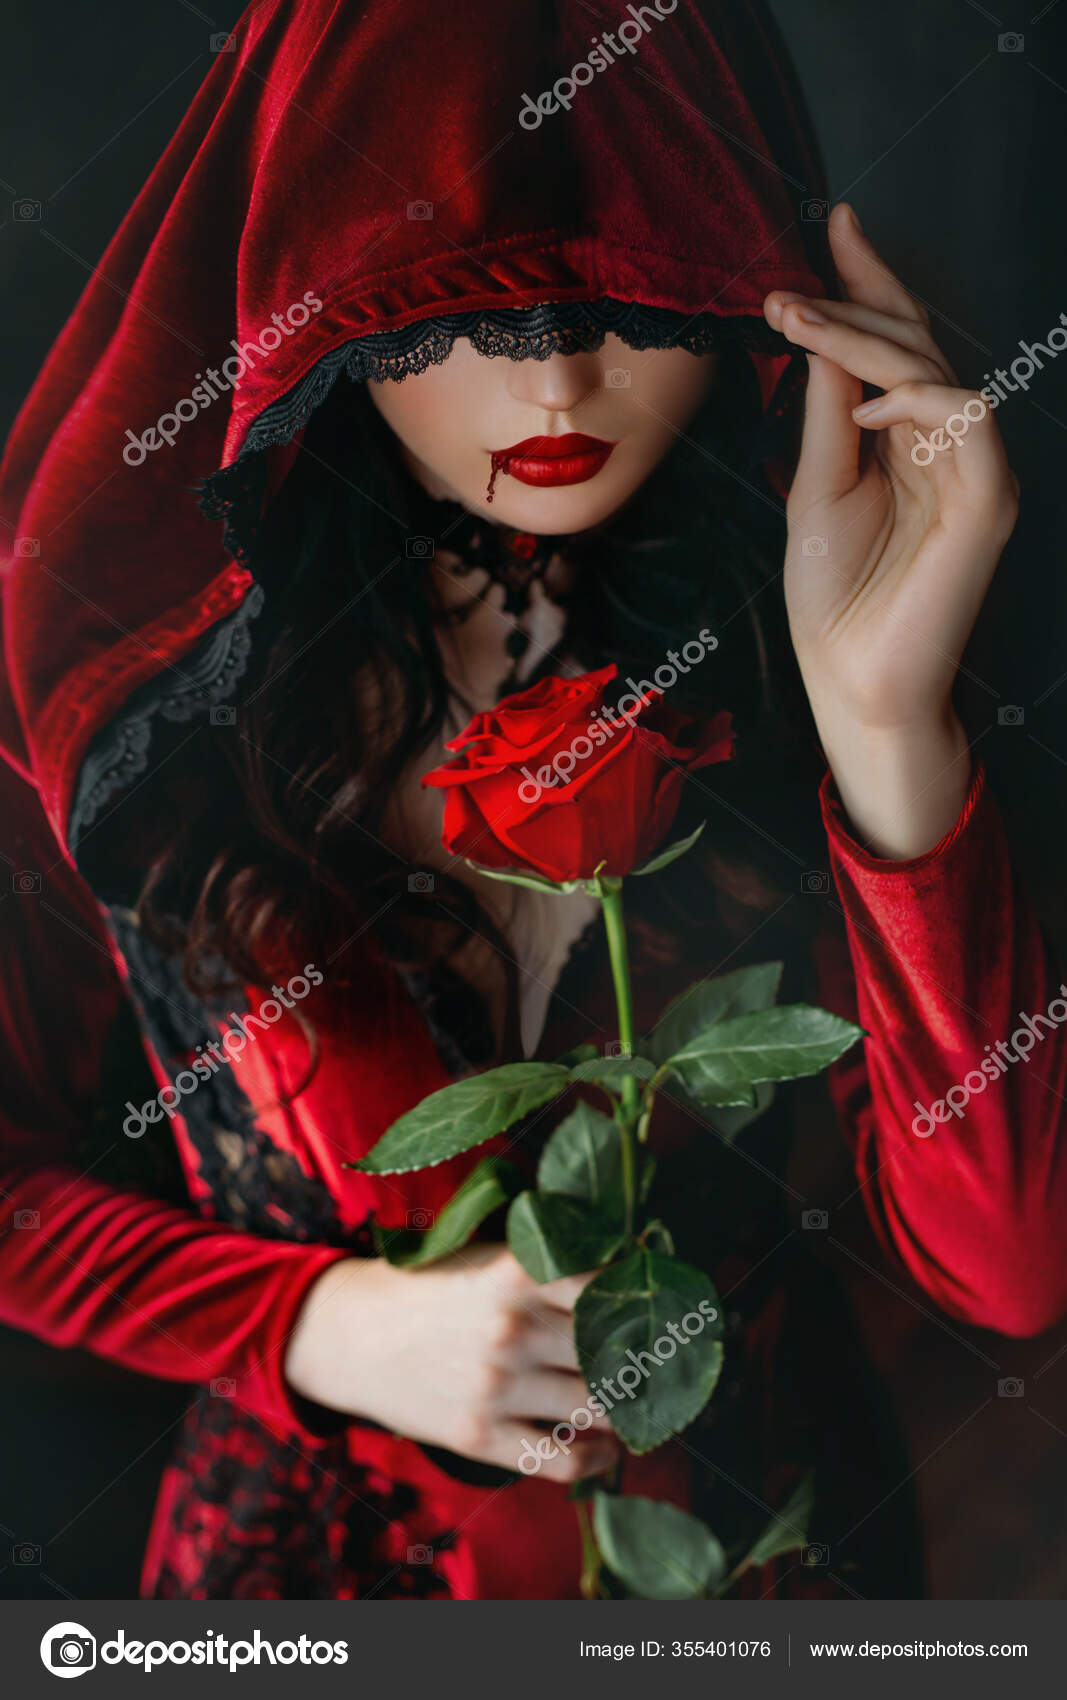 Gótico Bela Adormecida Princesa Medieval Vermelho e Preto vestido